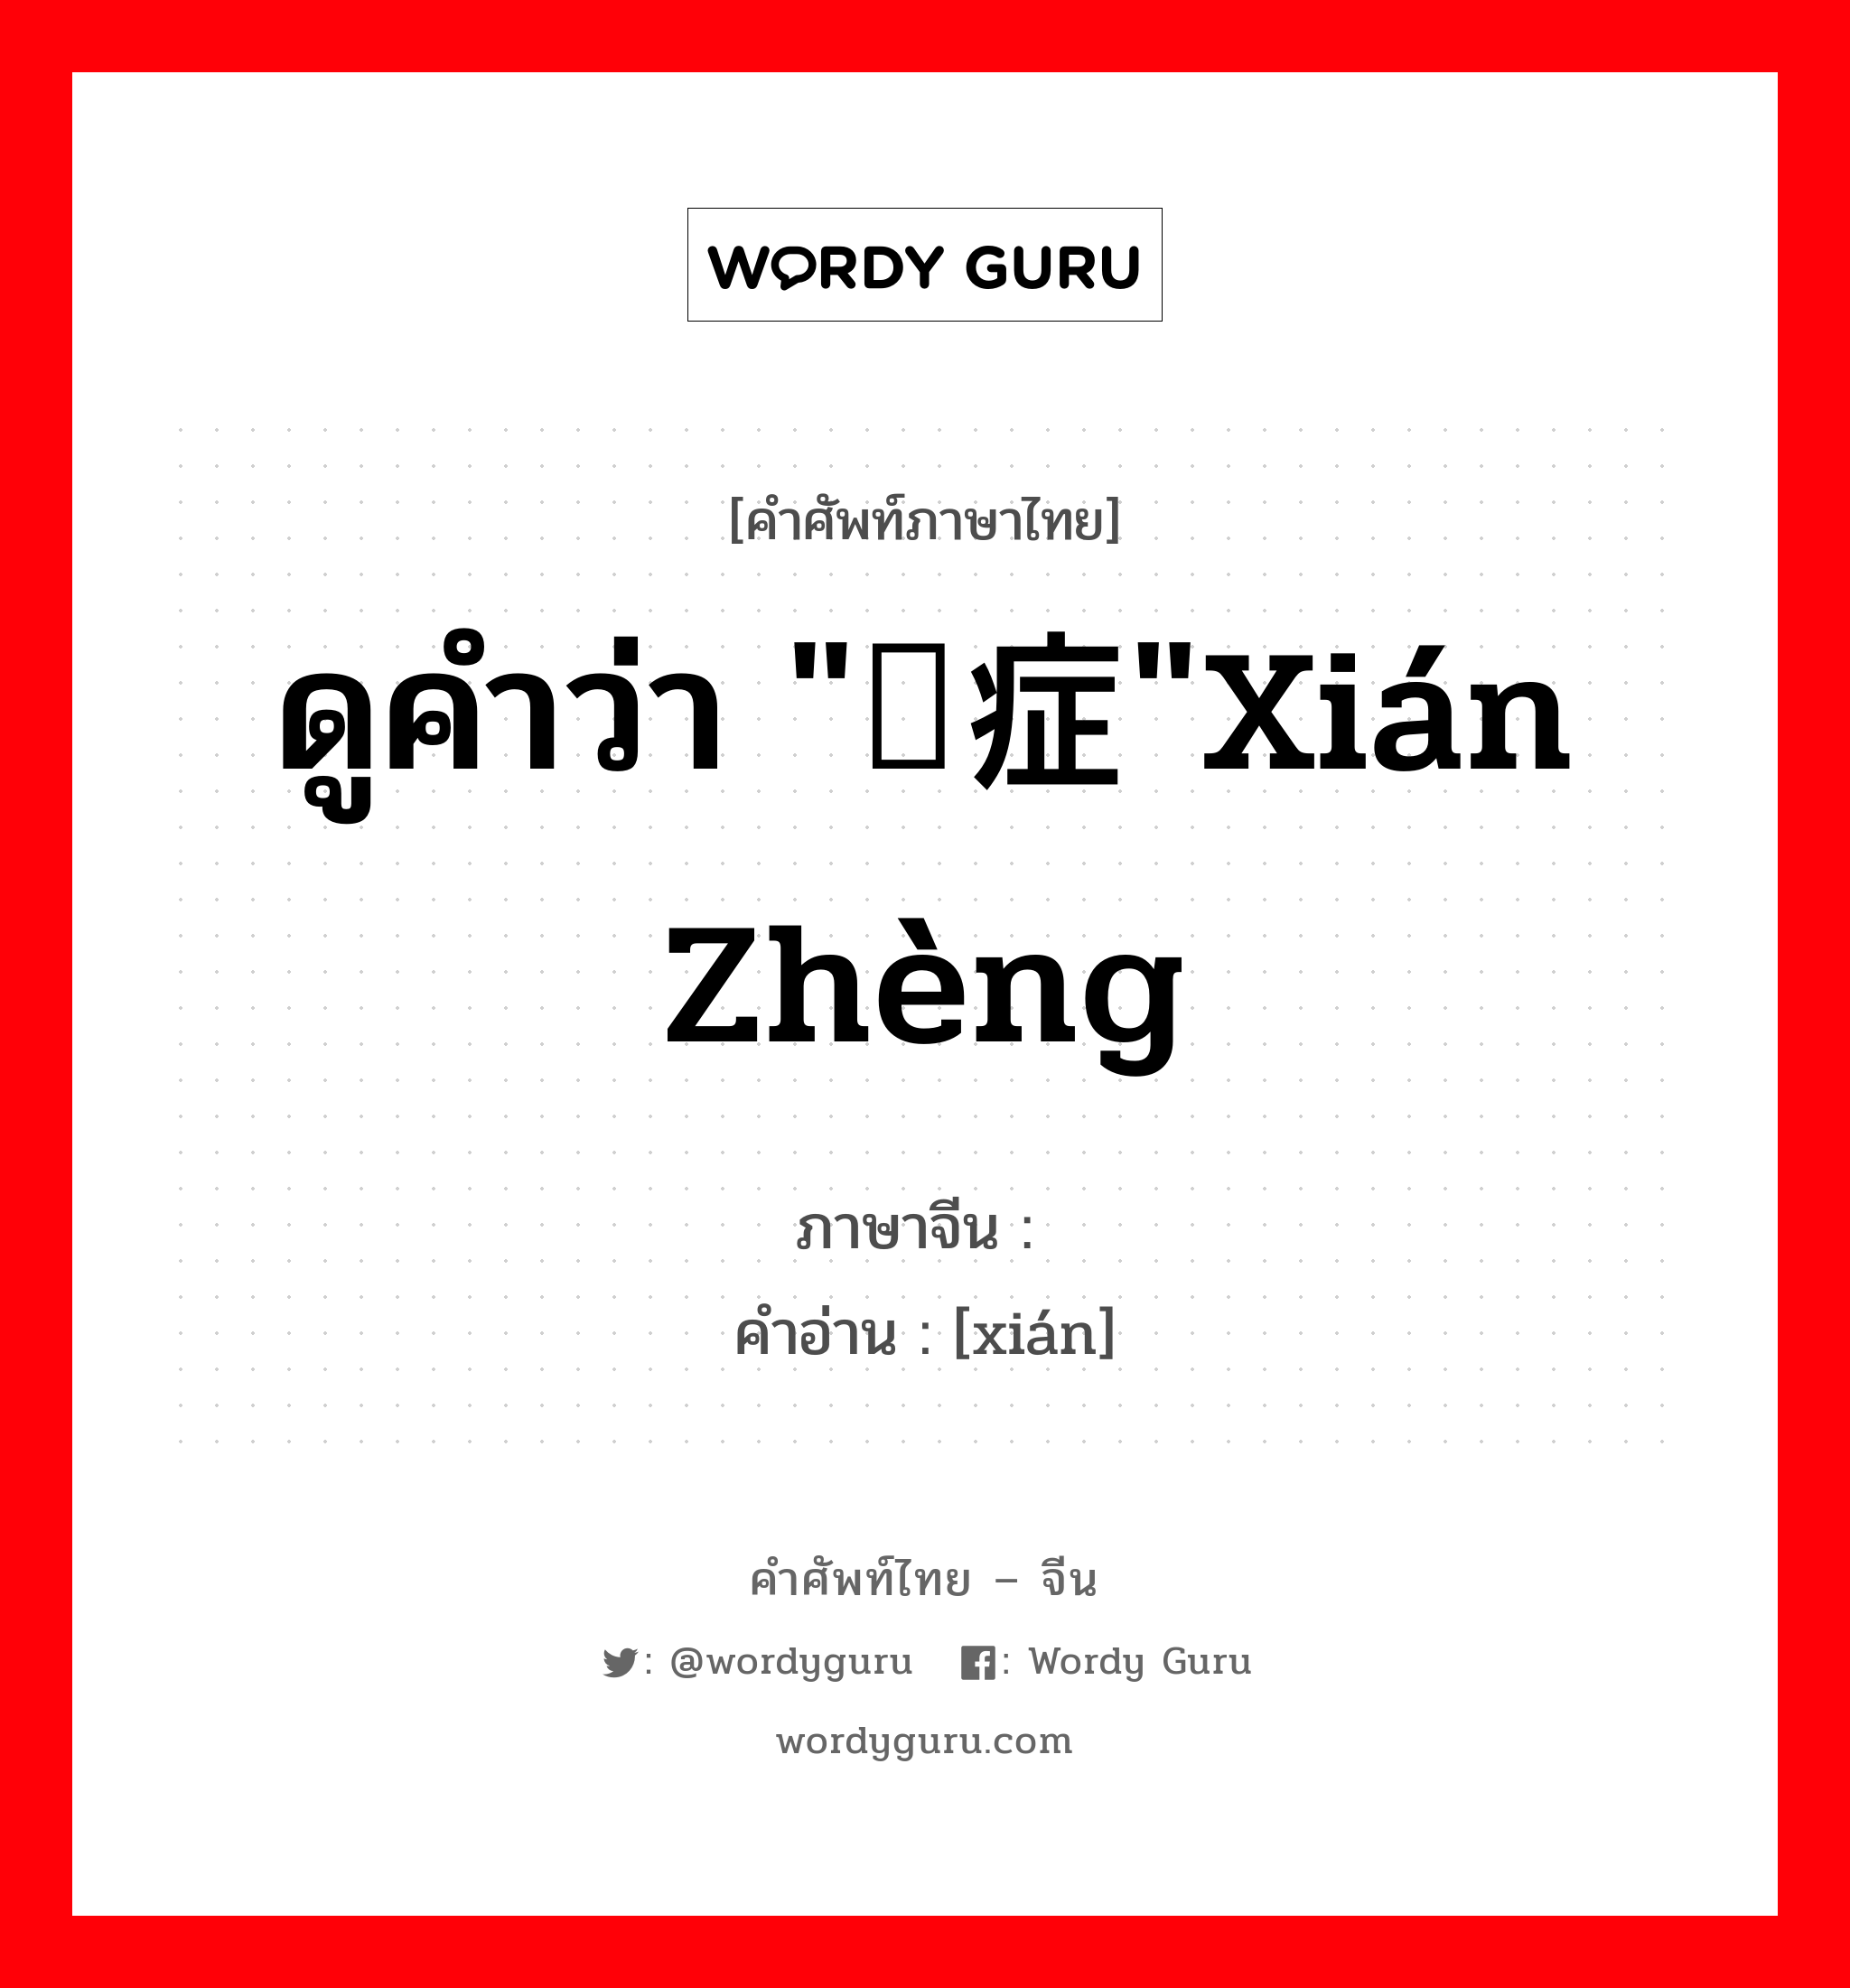 ดูคำว่า "痫症"xián zhèng ภาษาจีนคืออะไร, คำศัพท์ภาษาไทย - จีน ดูคำว่า "痫症"xián zhèng ภาษาจีน 痫 คำอ่าน [xián]